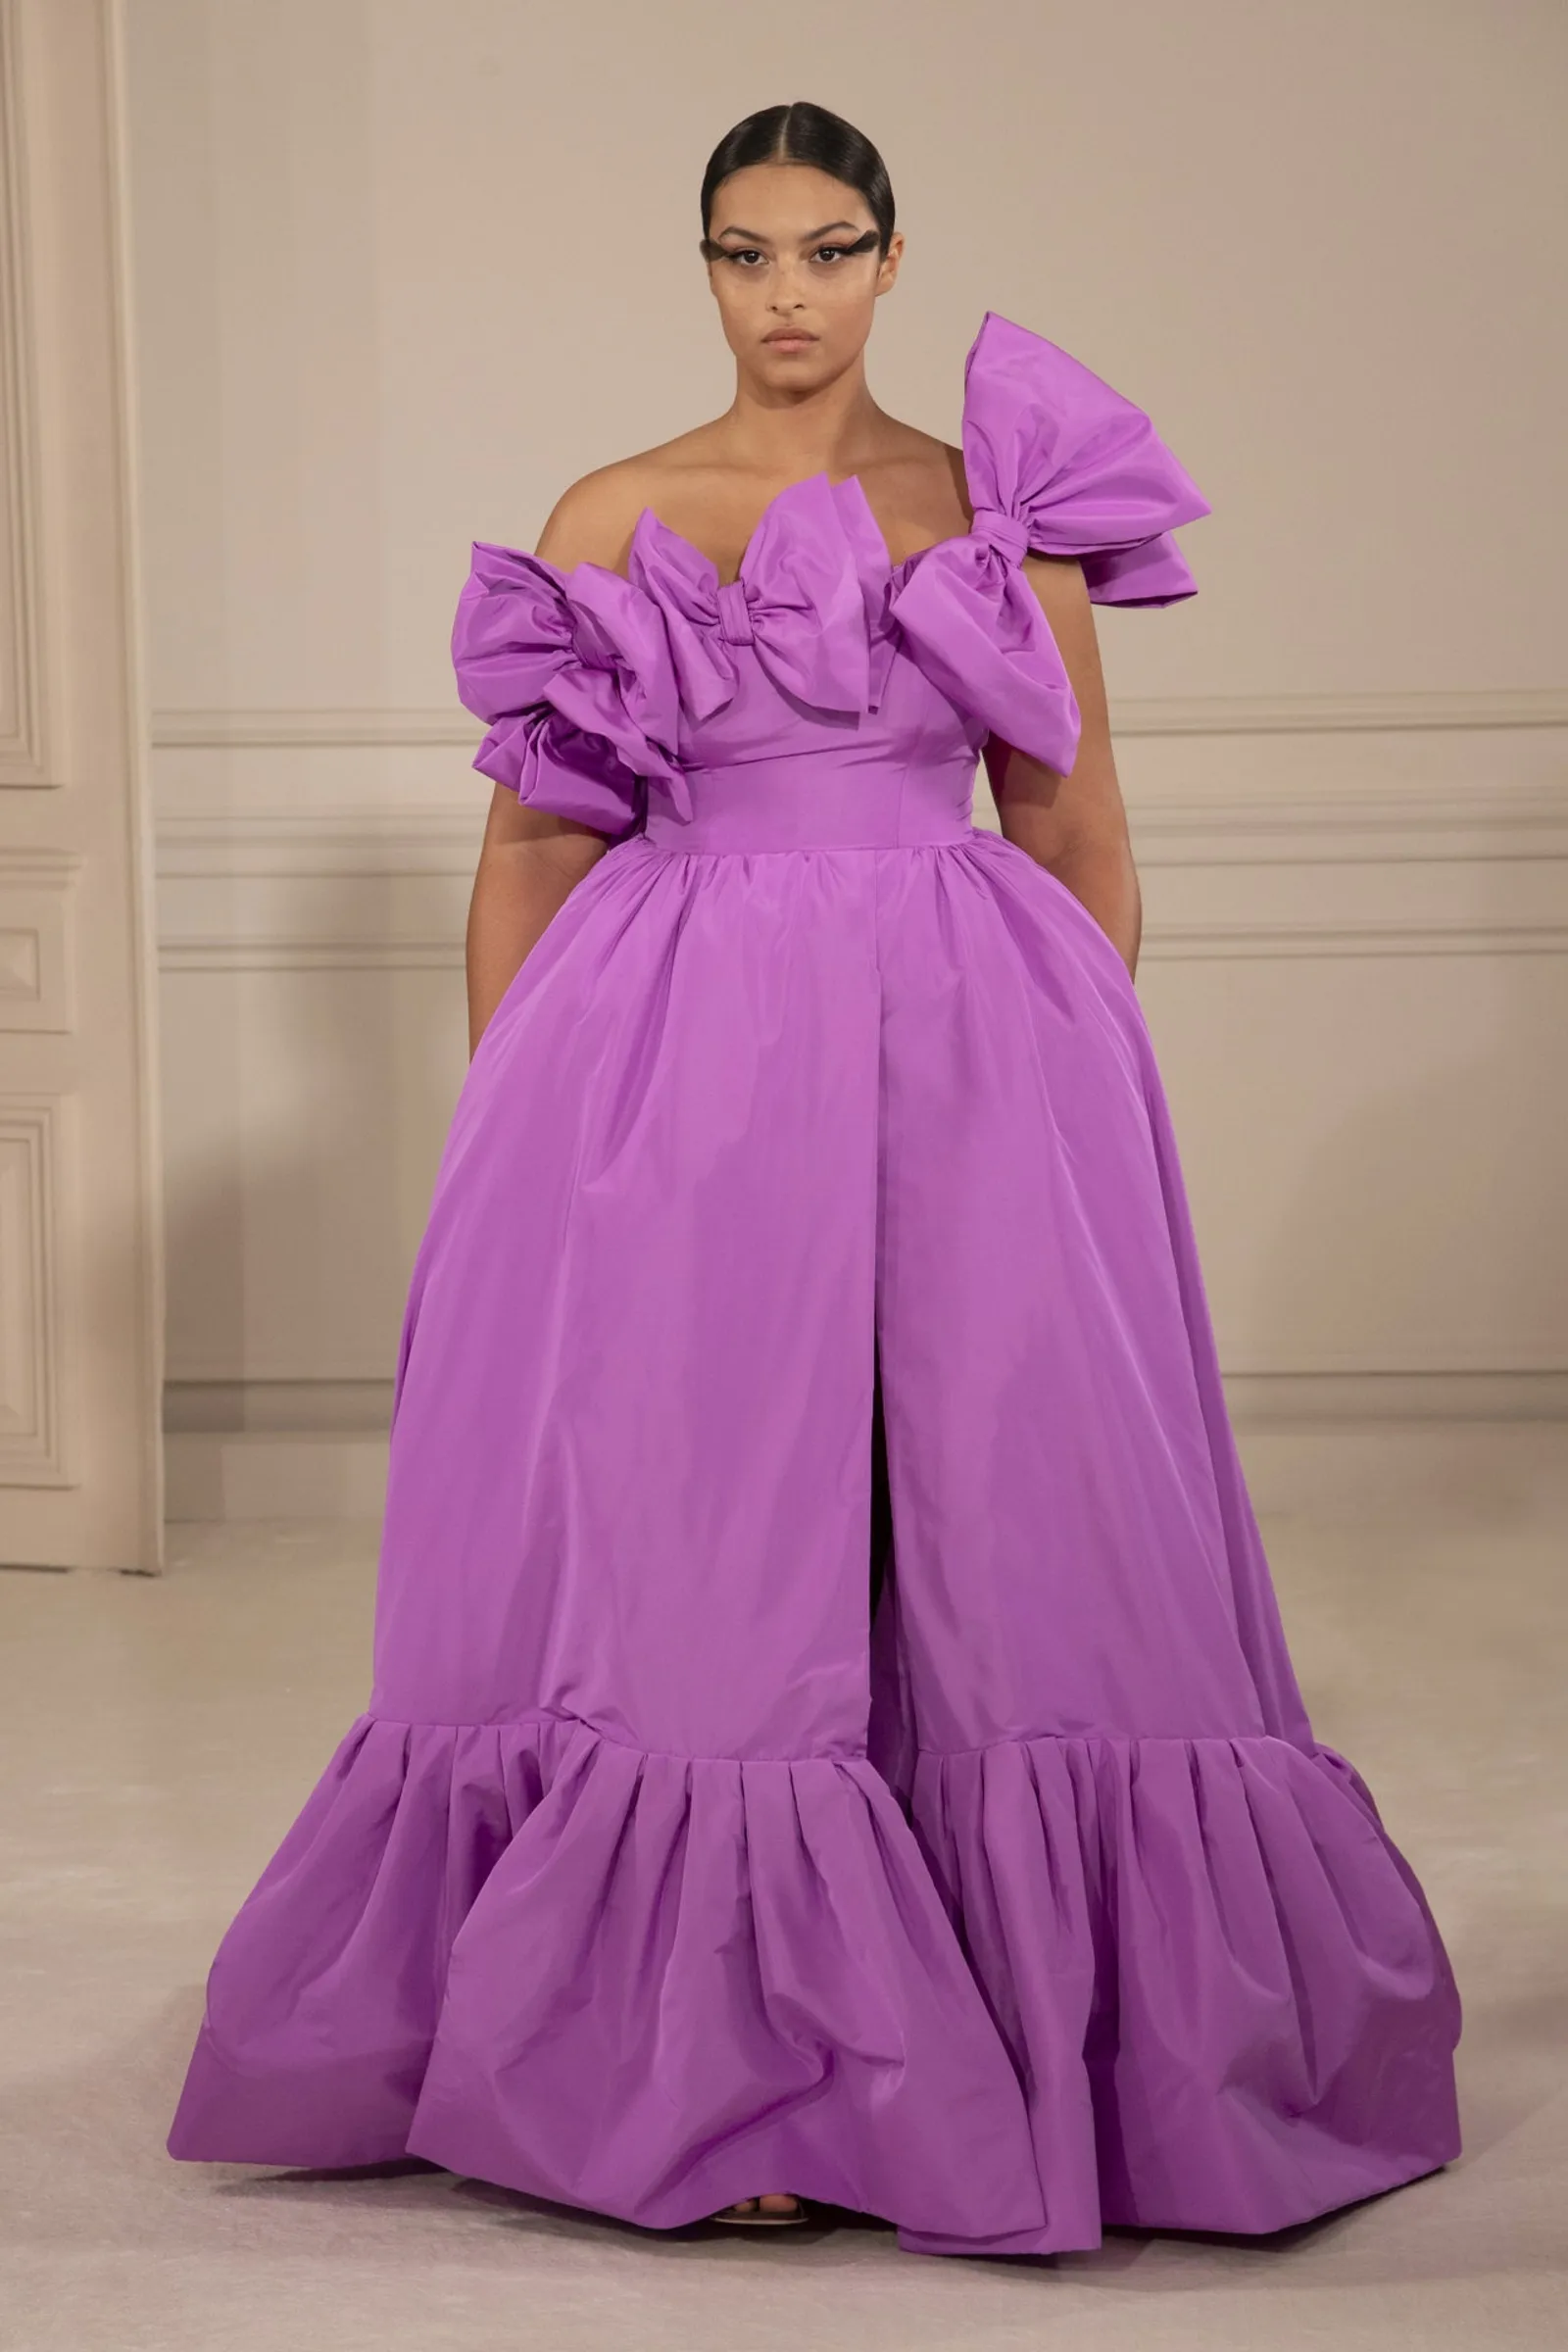 9 Hal Menarik dari Koleksi Valentino
Spring/Summer 2022 Couture